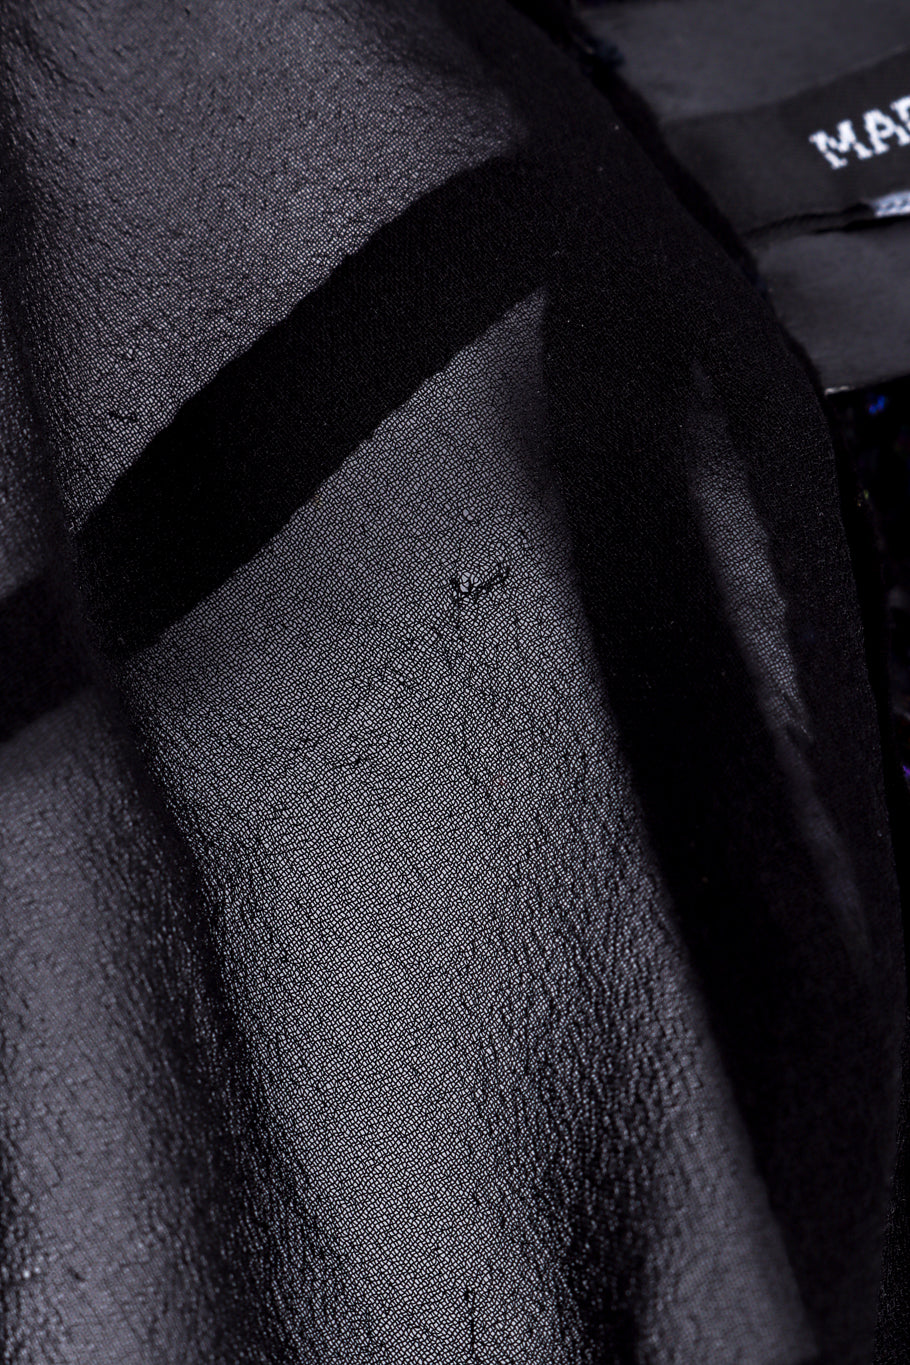 Ann Demeulemeester Silk Sequin Vest Top small snag closeup @recessla